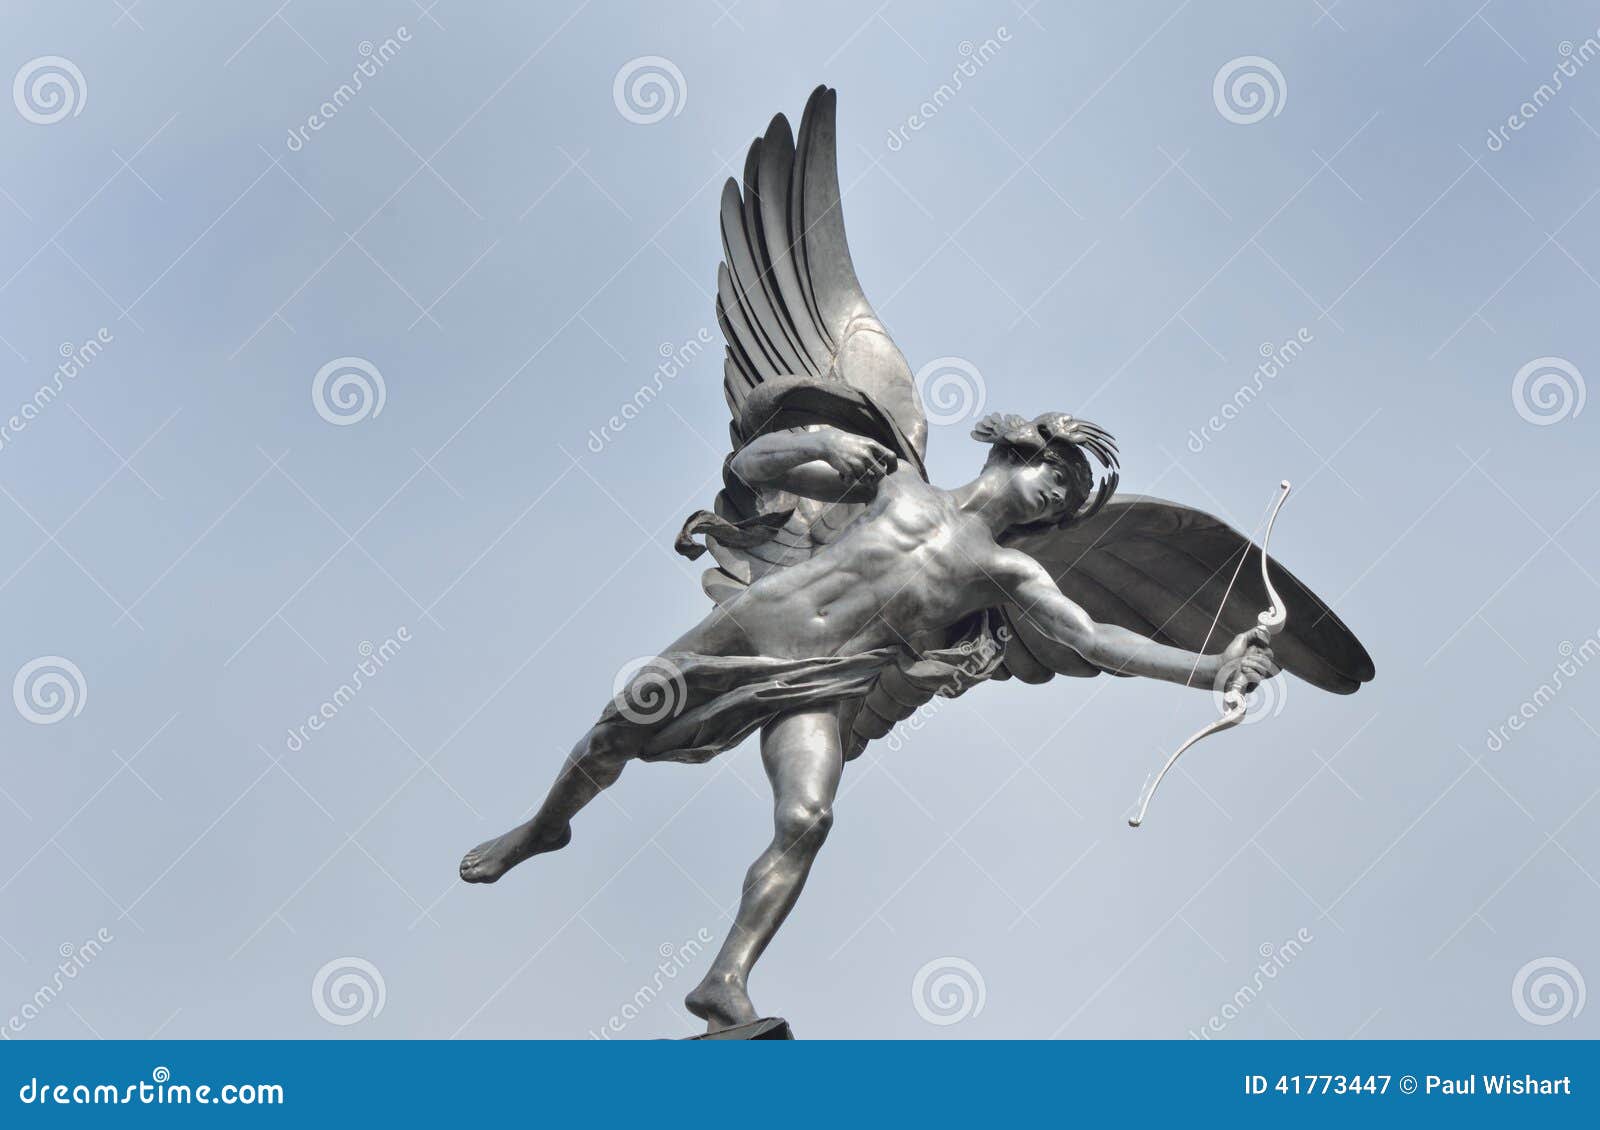 eros statue with blue sky